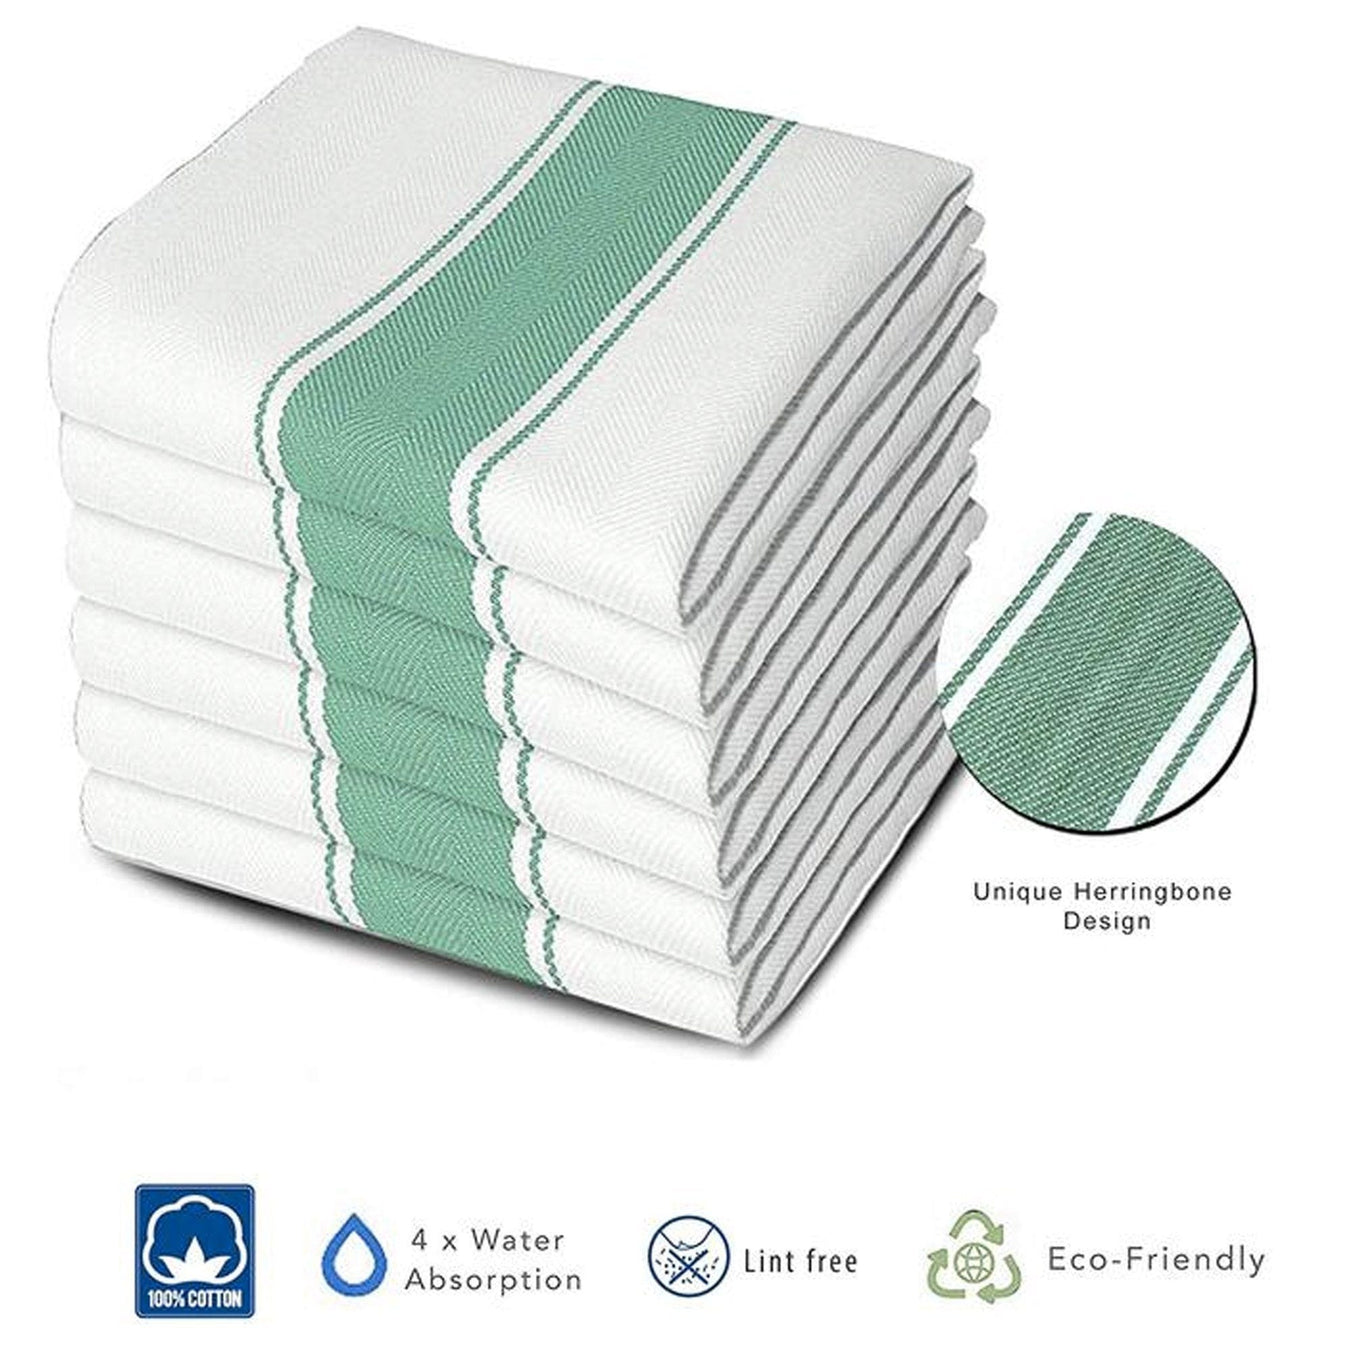 Commercial Grade Towels